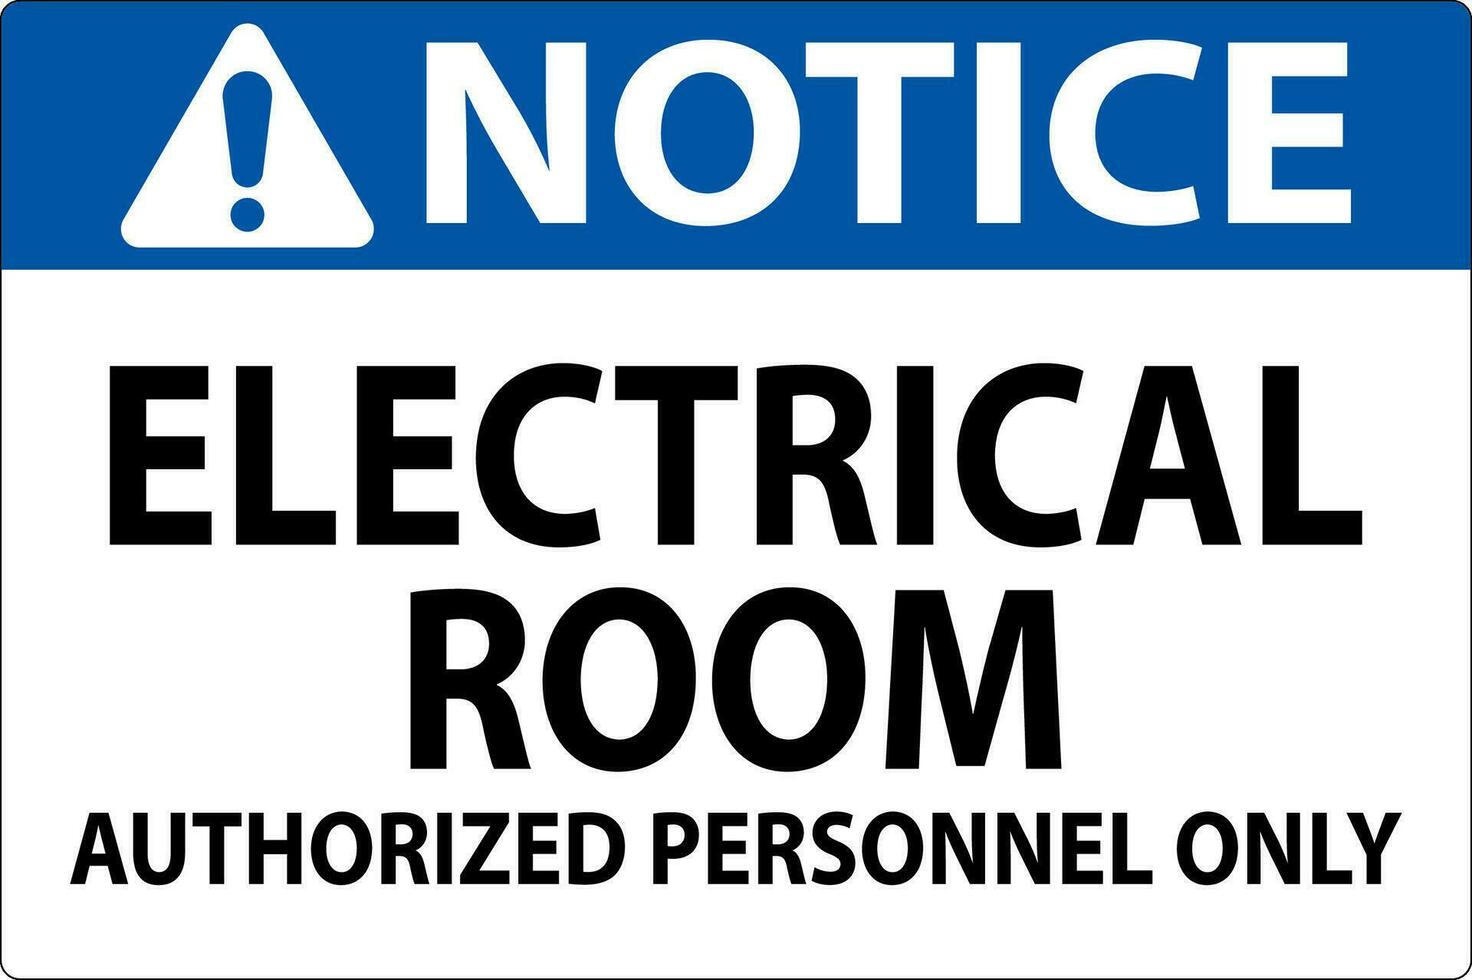 beachten Zeichen elektrisch Zimmer - - autorisiert Personal nur vektor